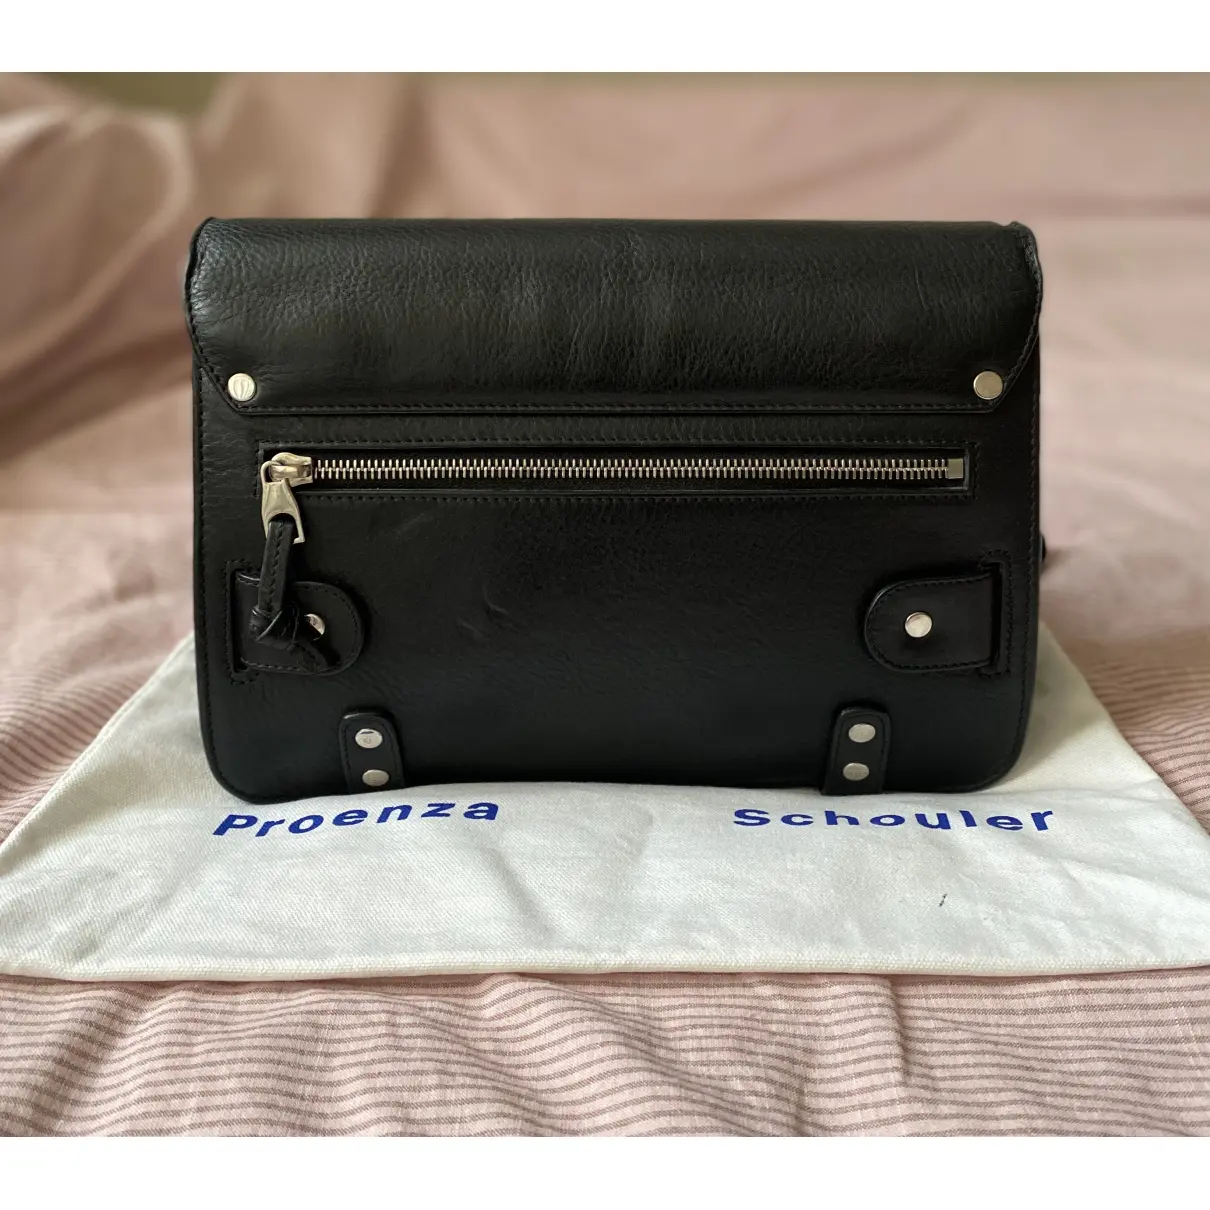 Buy Proenza Schouler PS11 leather handbag online